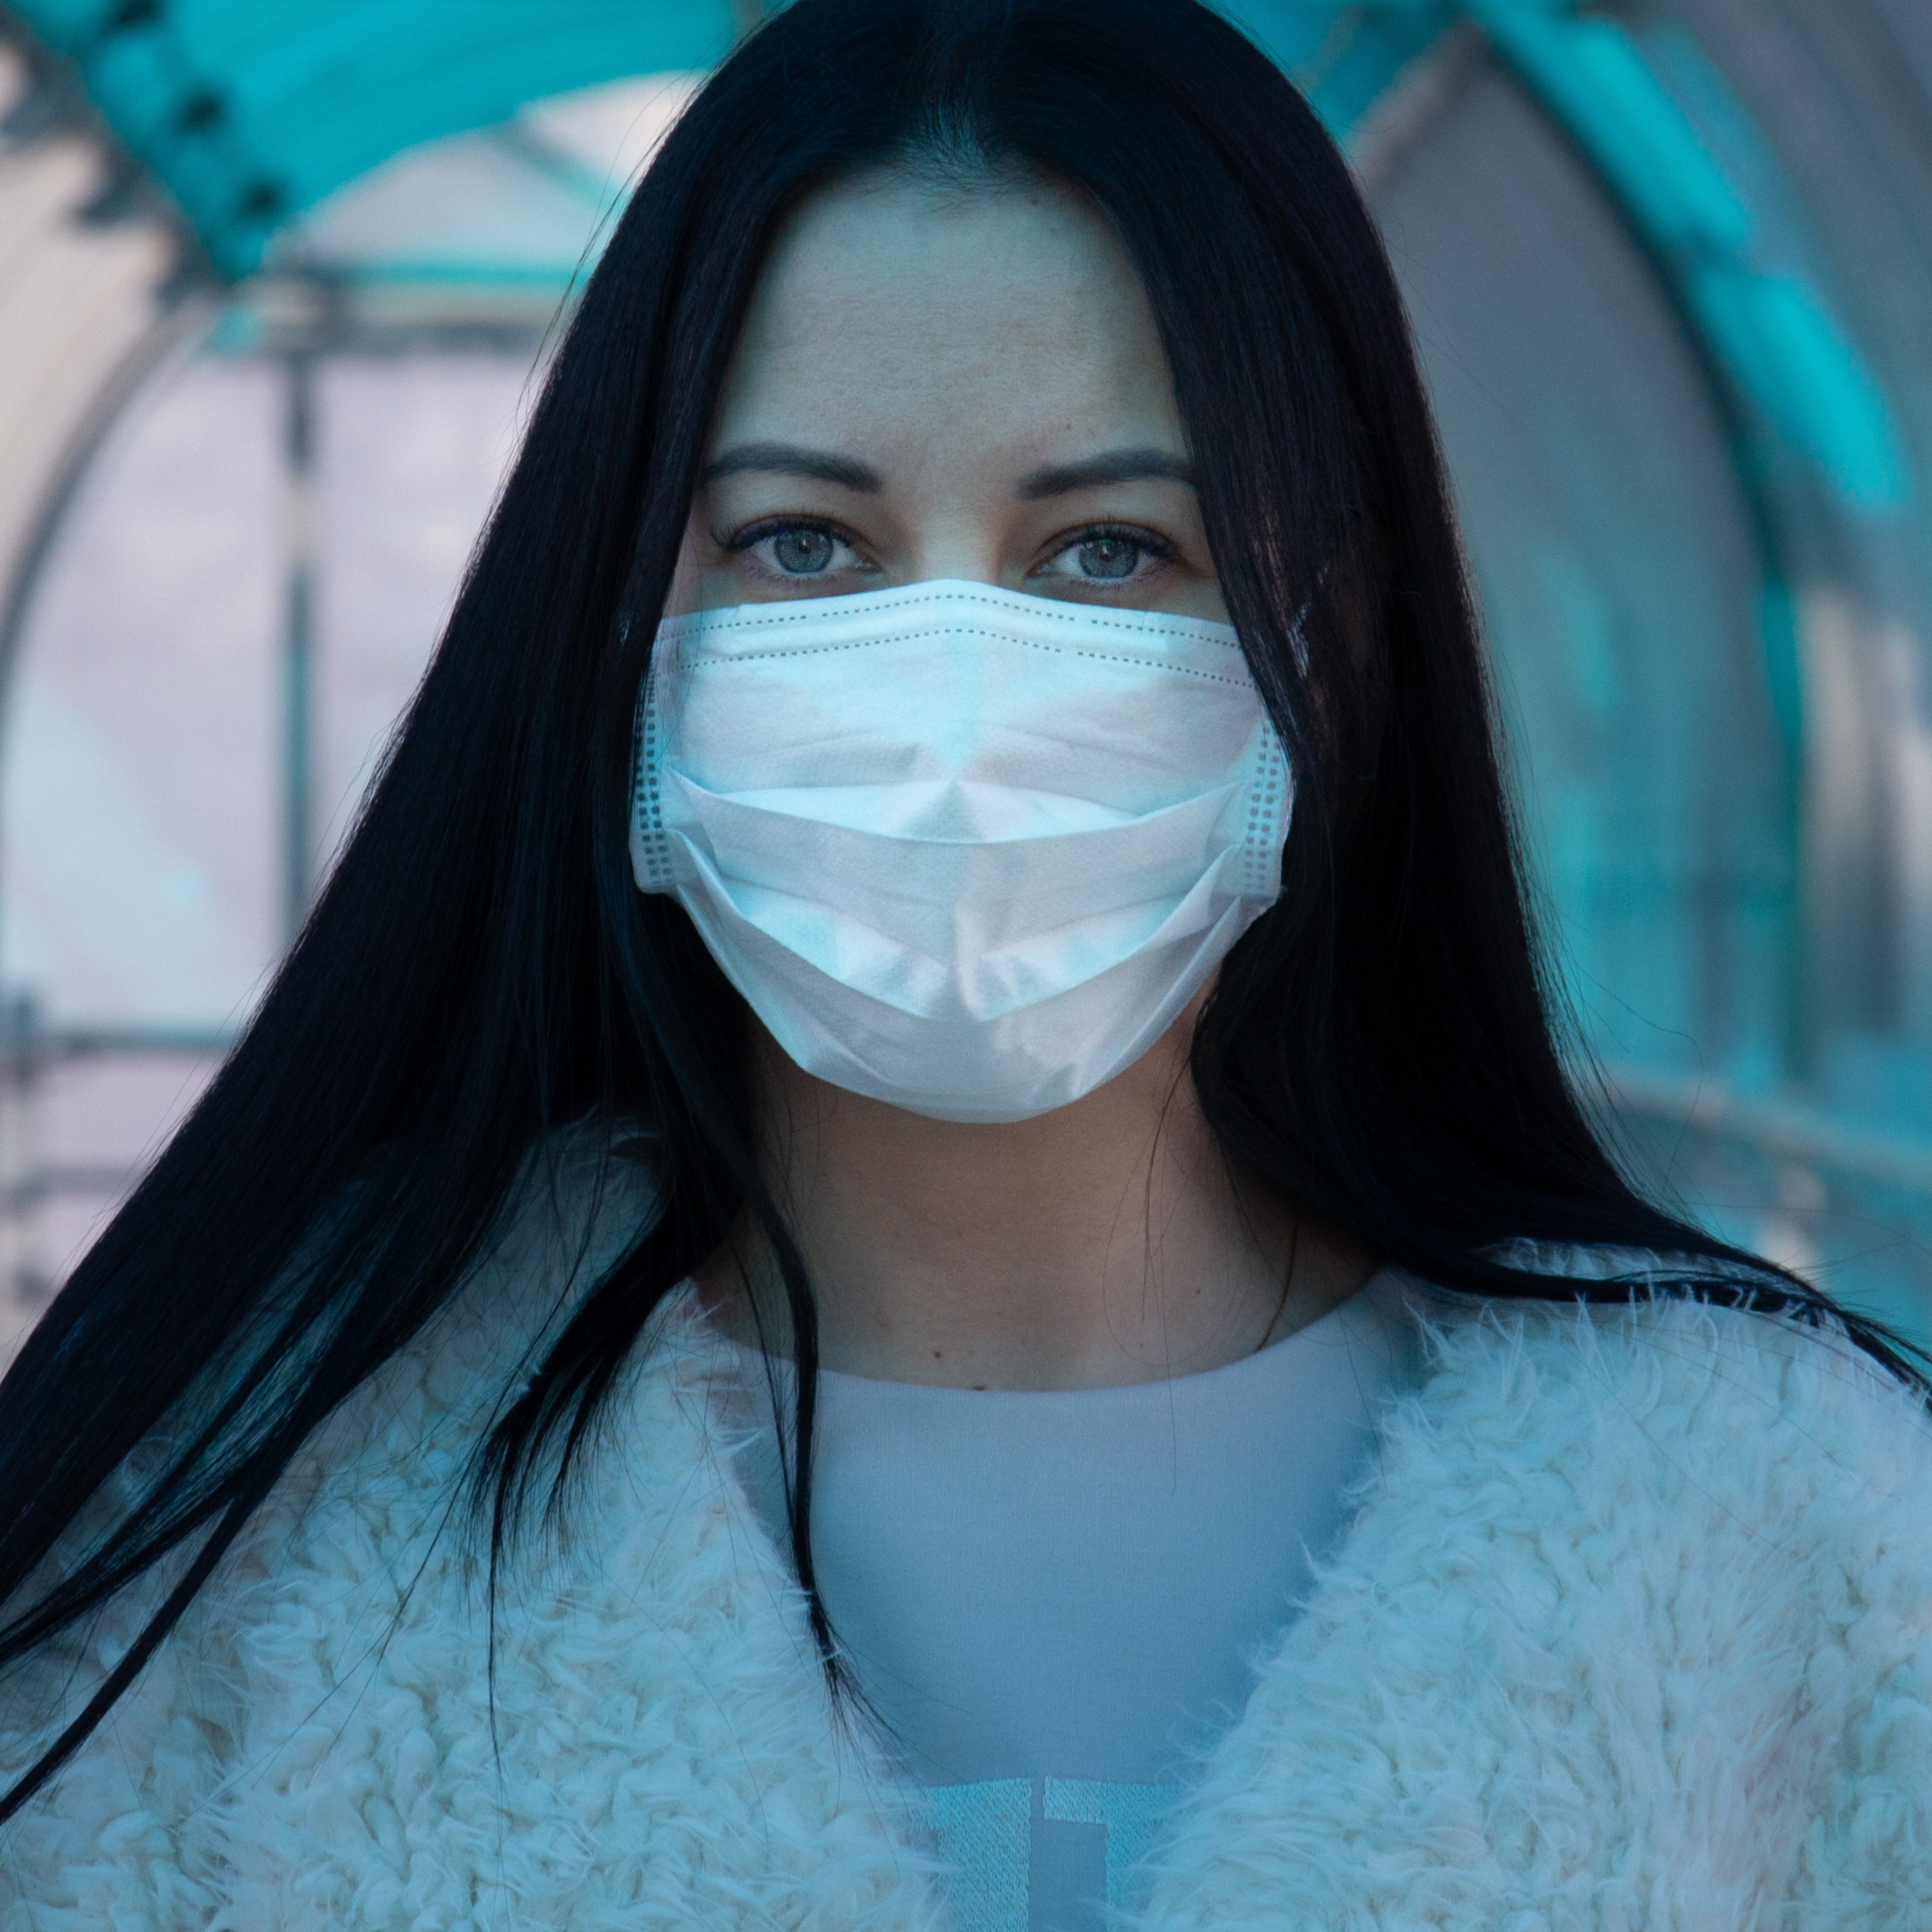 Les màscares poden desinfectar-se a casa i continuar sent efectives